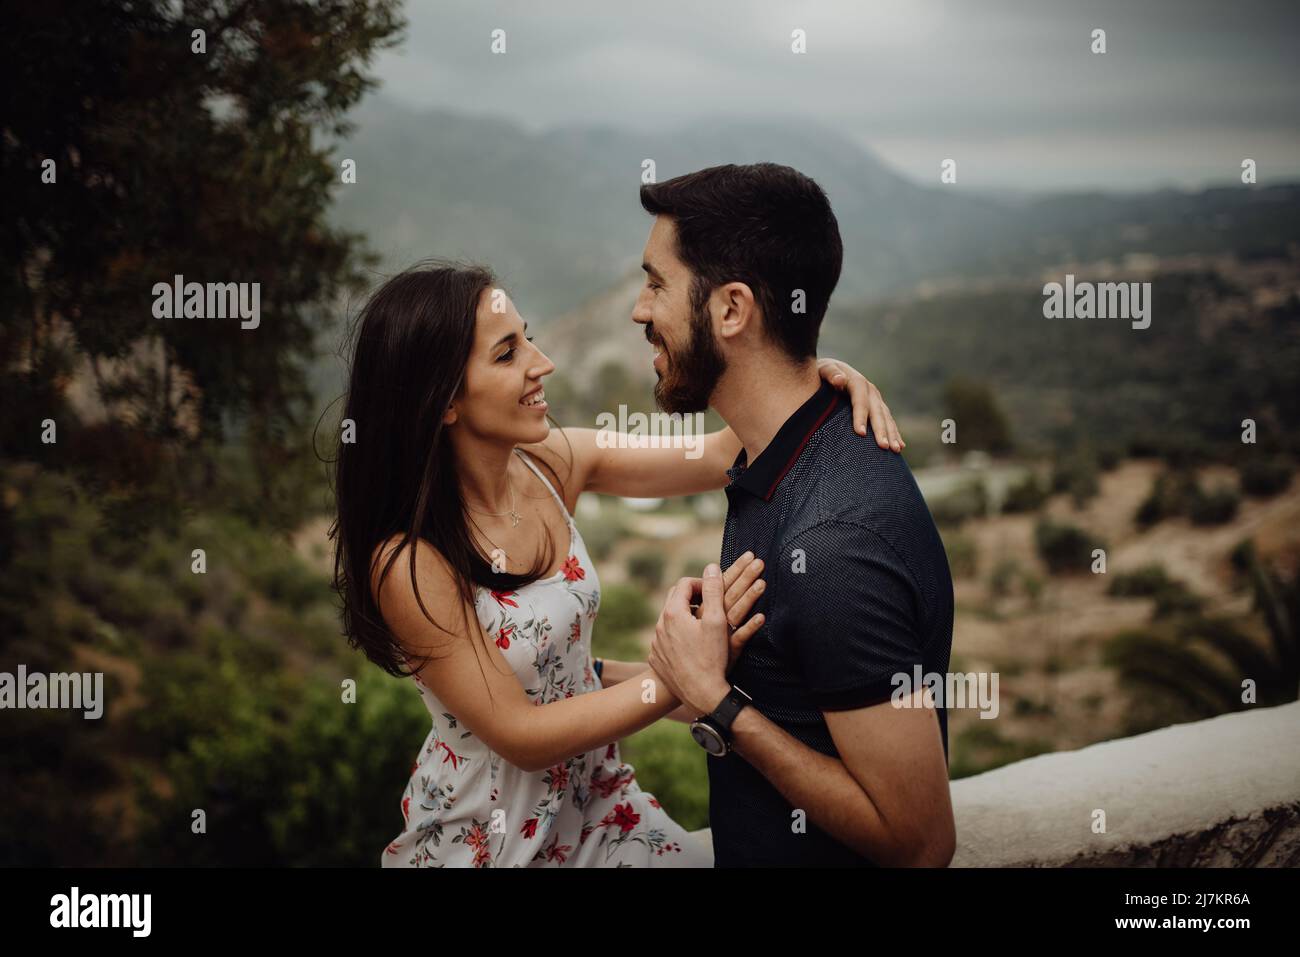 Seitenansicht eines glücklichen lächelnden Paares, das sich umarmte und ansah Einander beim Schleifen in nebliger Landschaft am Sommertag Stockfoto